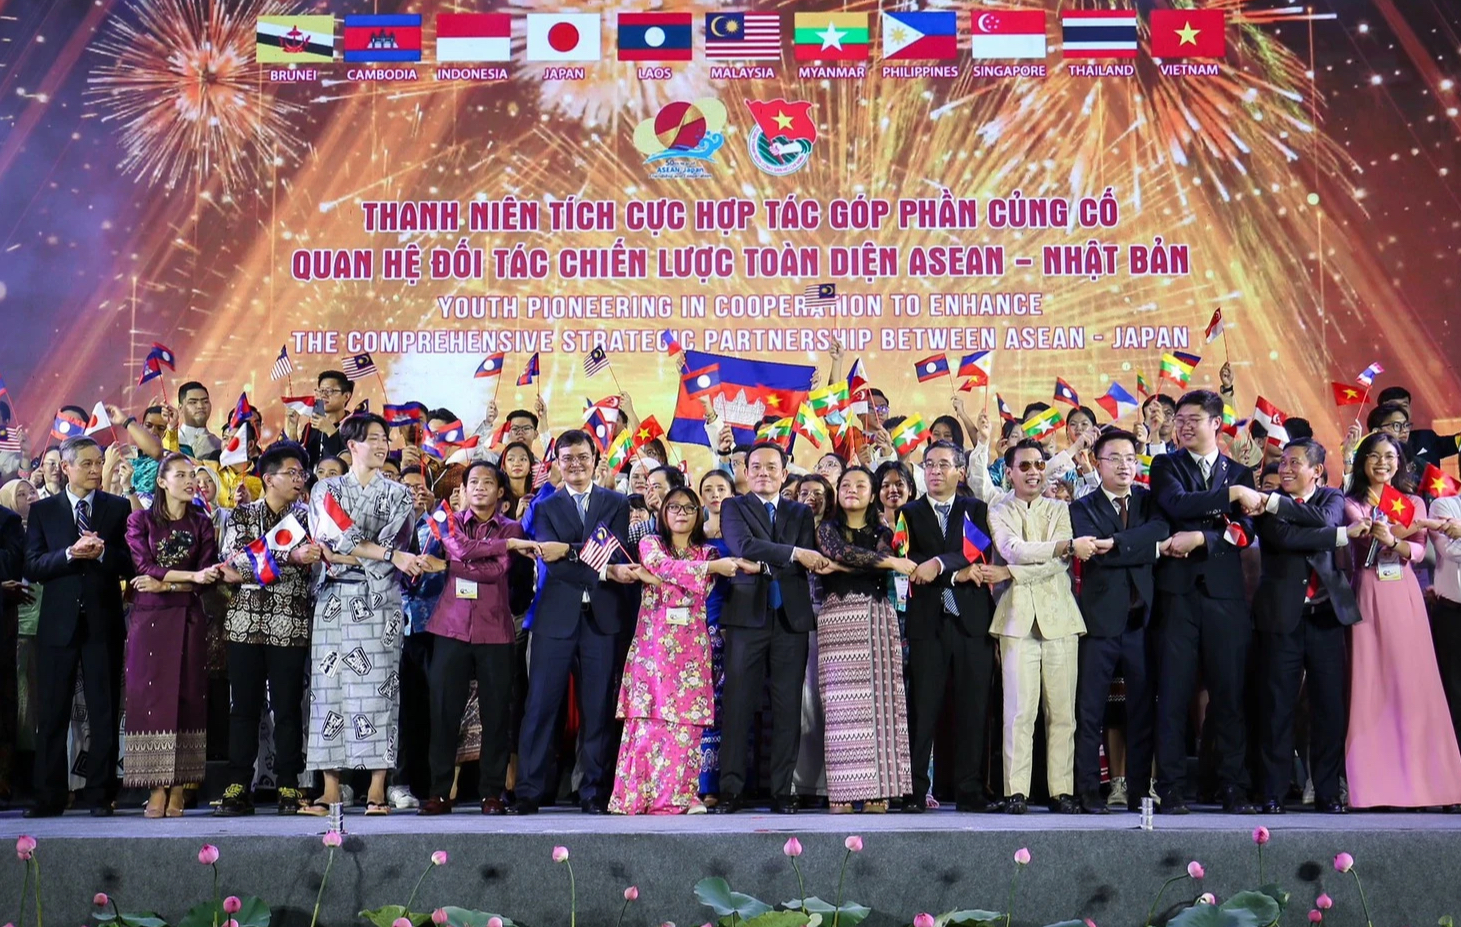 Thanh niên sẽ góp phần đưa quan hệ ASEAN - Nhật Bản phát triển vững mạnh - Ảnh 2.